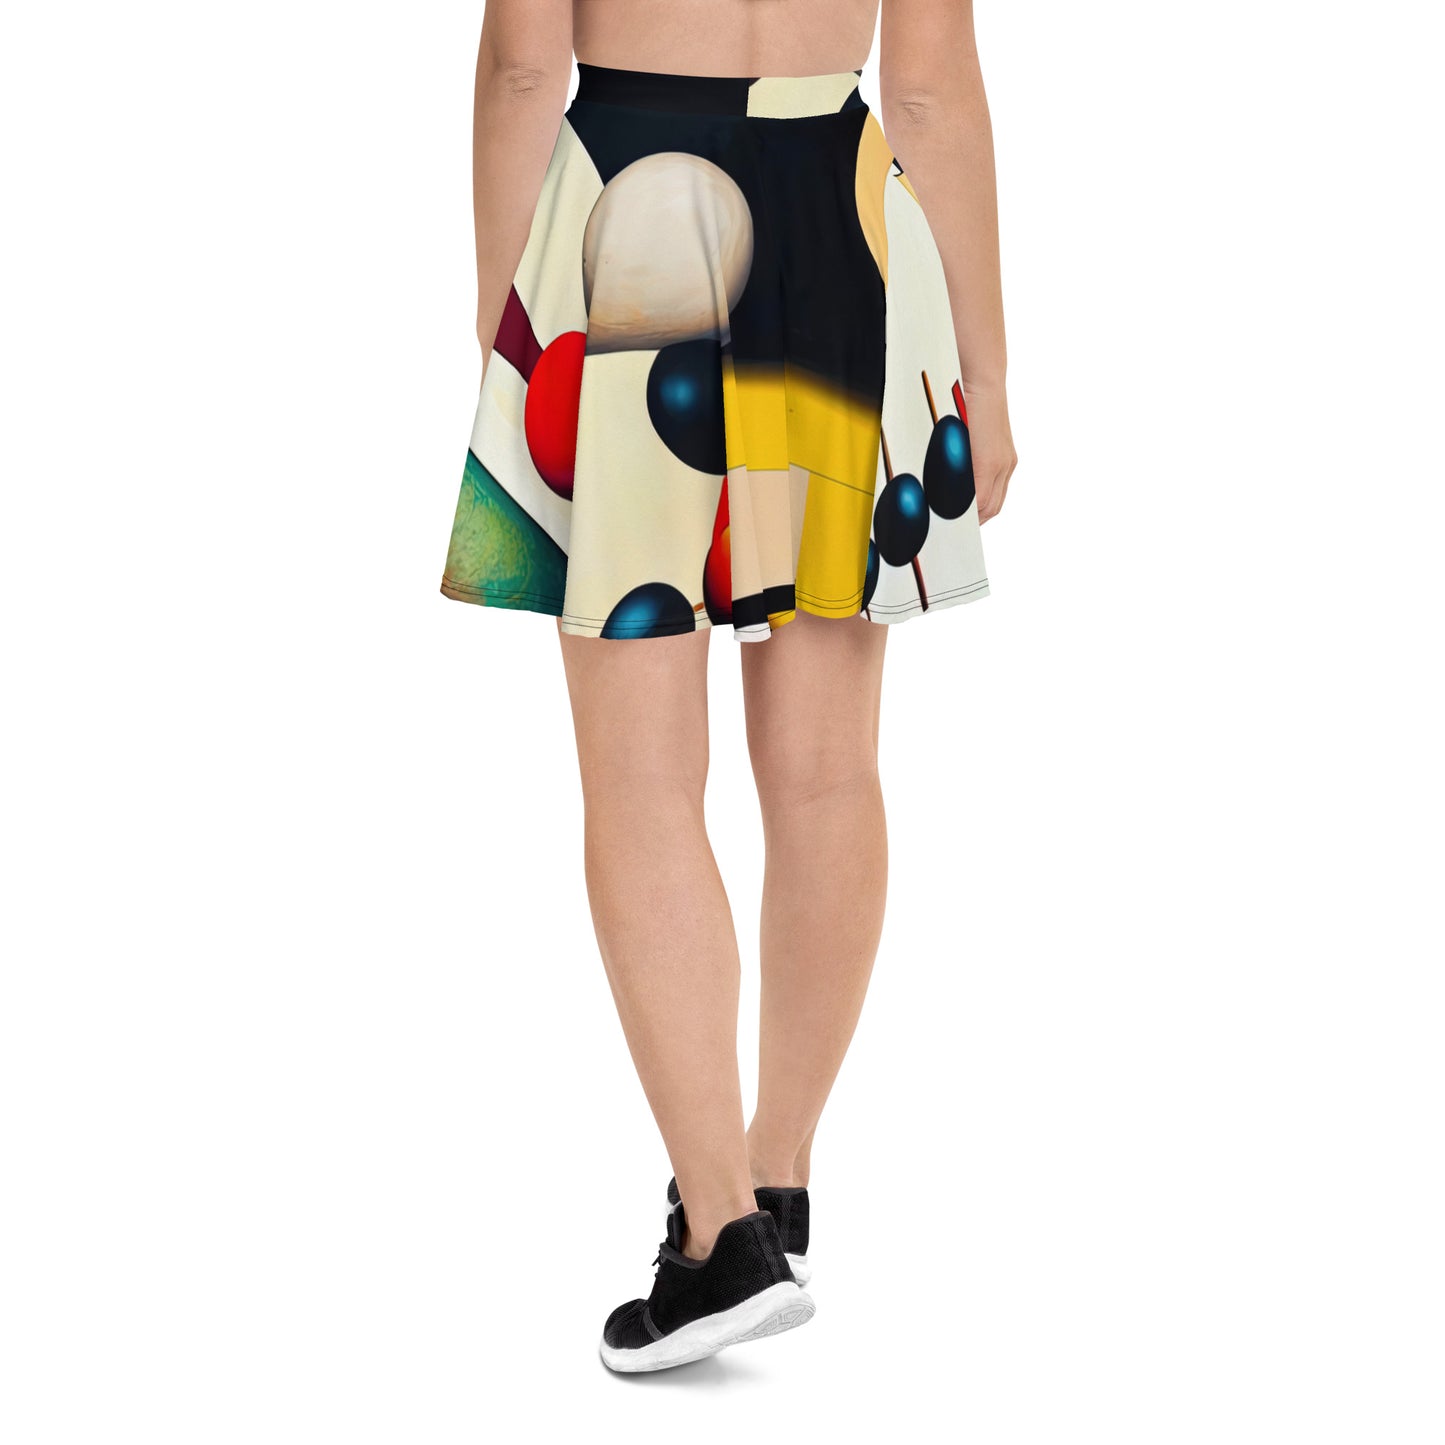 DMV 0055 Retro Art Skater Skirt